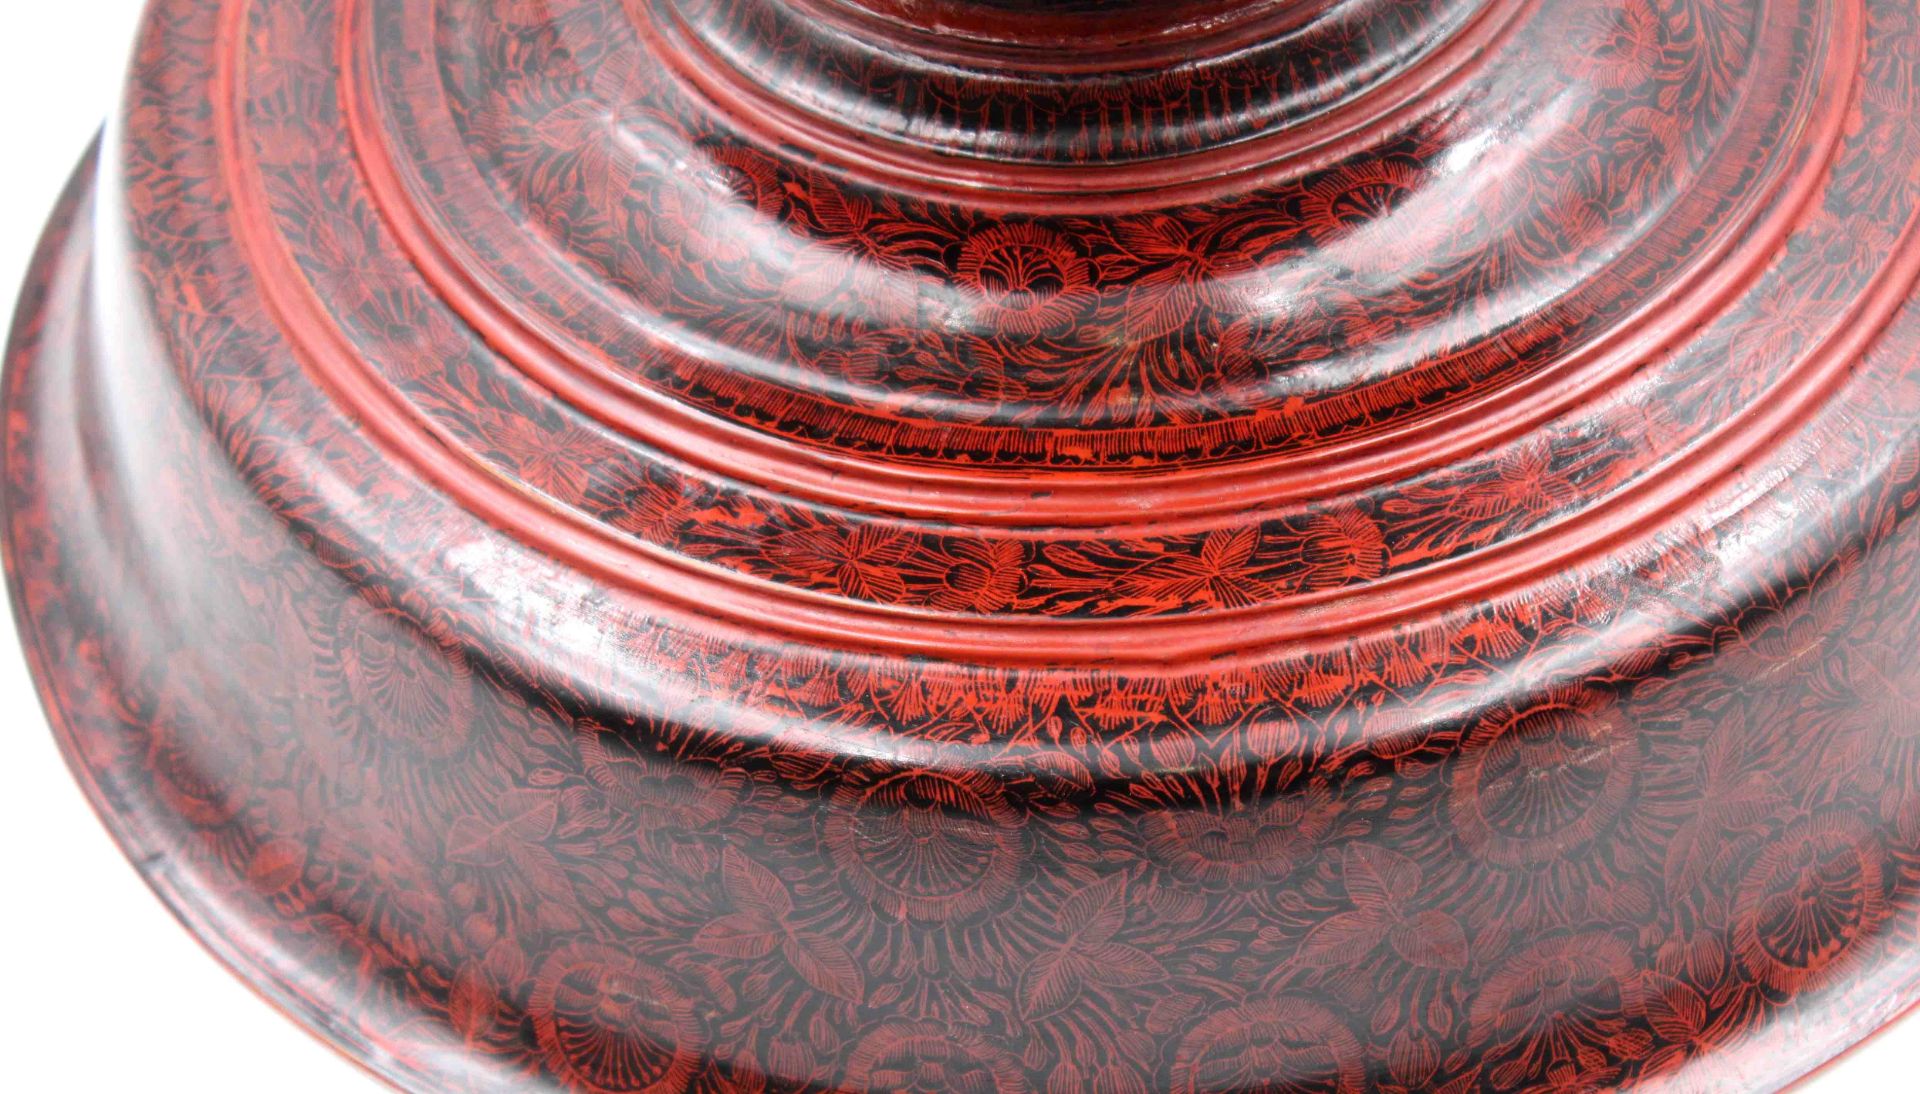 Tafelaufsatz. Holz. Roter und schwarzer Lack. China, Korea?27 cm hoch. 35 cm Durchmesser. - Bild 6 aus 9